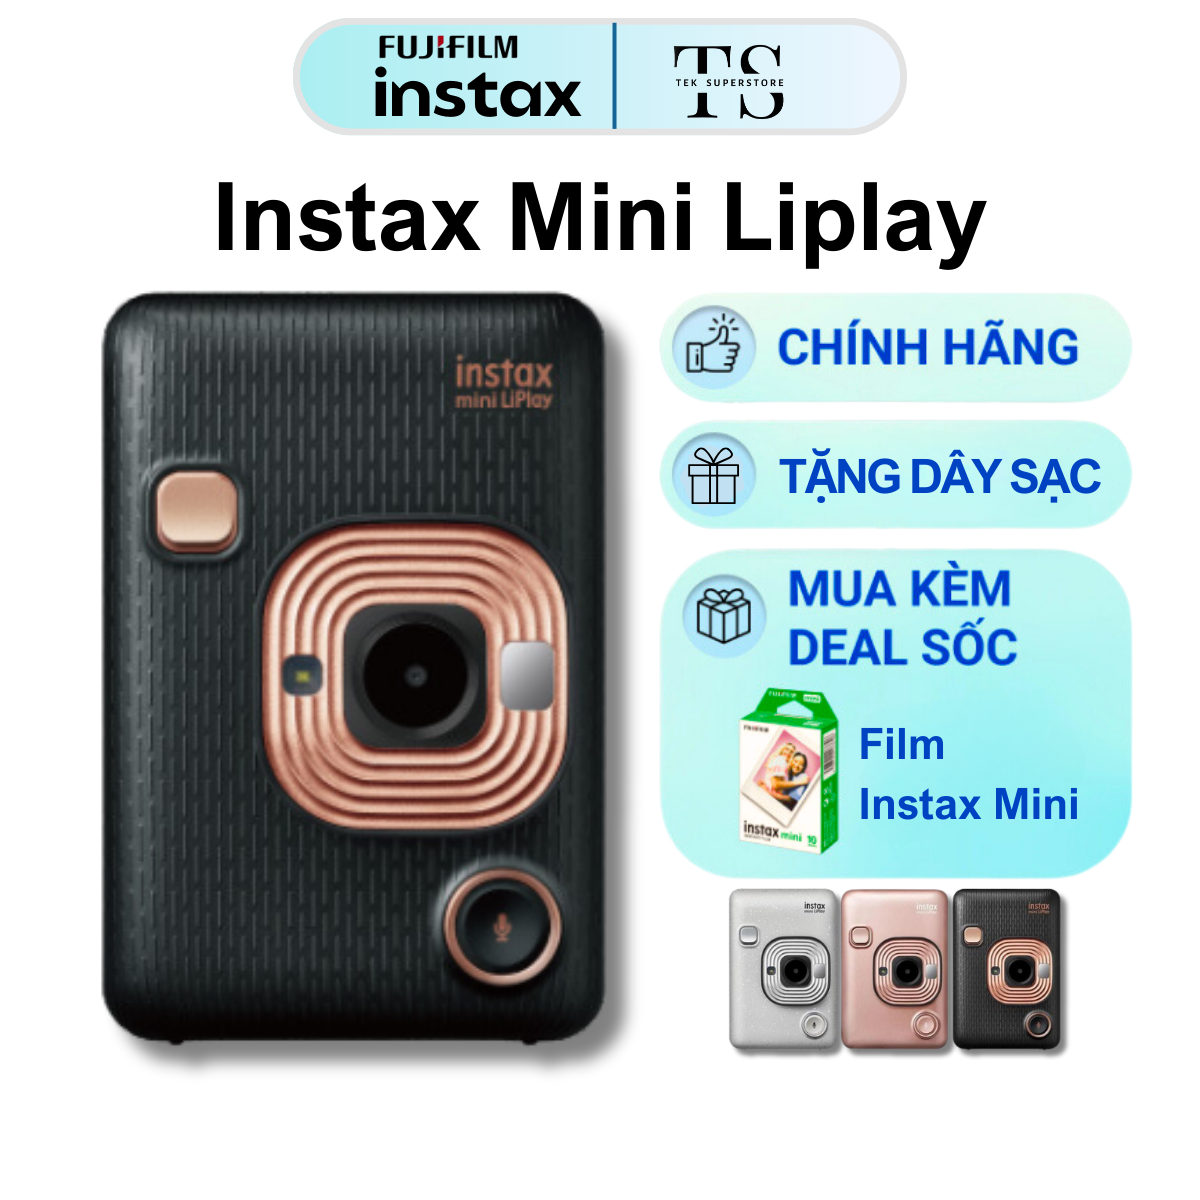 Instax Mini LiPlay - Máy Chụp Ảnh Và In Lấy Liền 3 Trong 1 - BH 6 tháng